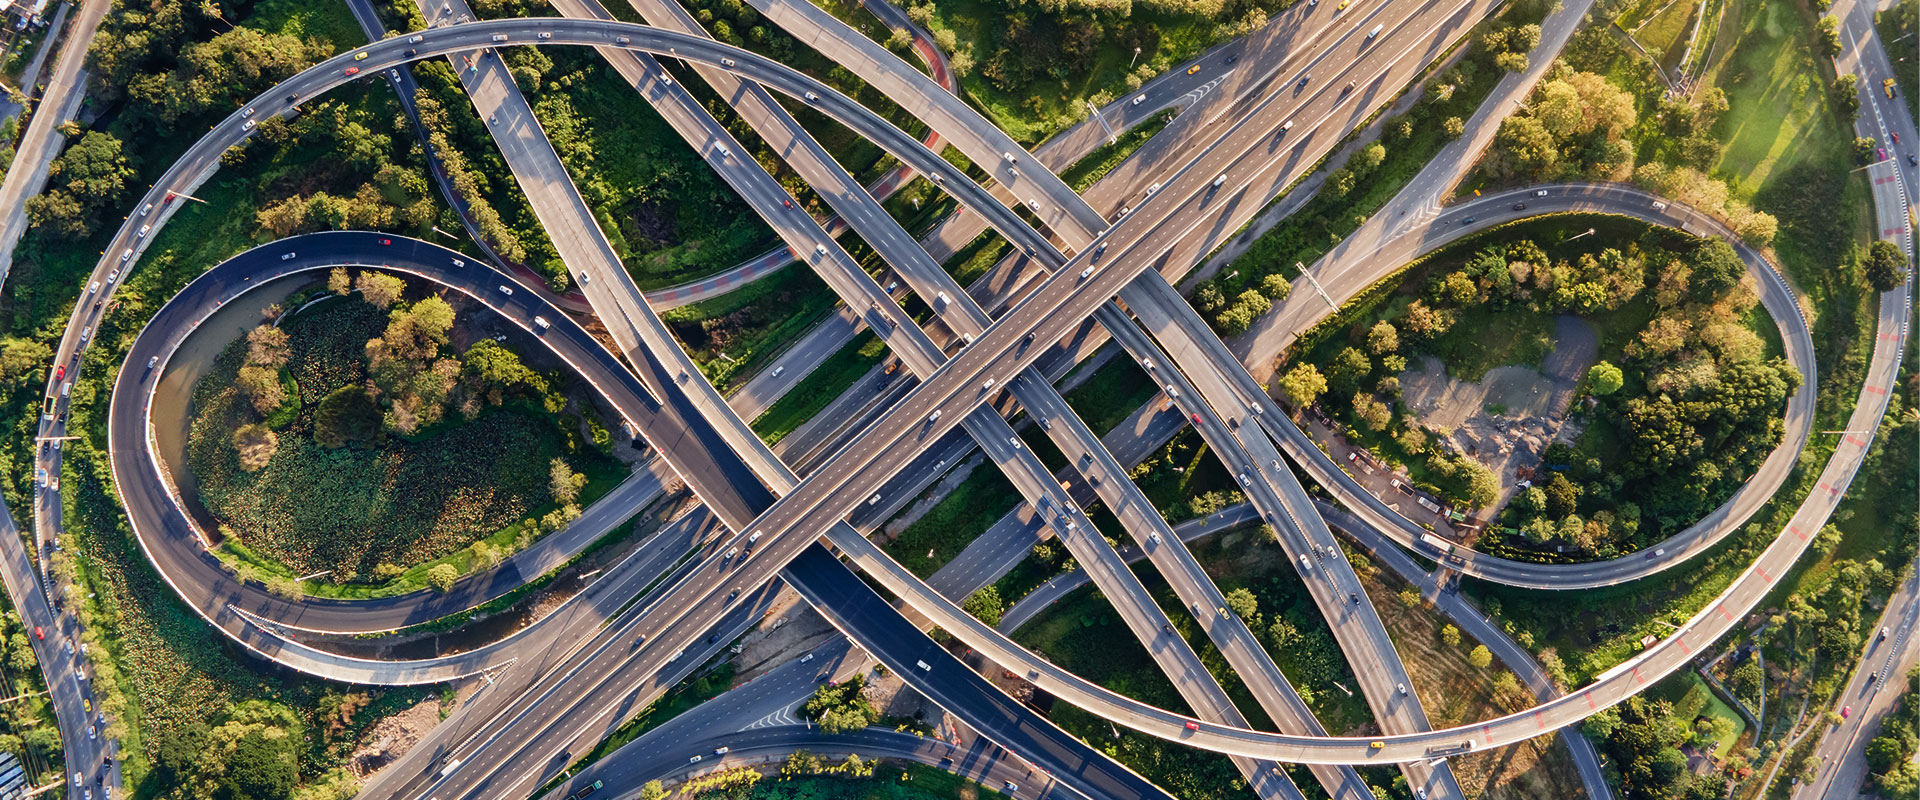 Vue aérienne d'un échangeur routier ou d'une intersection d'autoroutes avec un trafic urbain dense roulant à vive allure